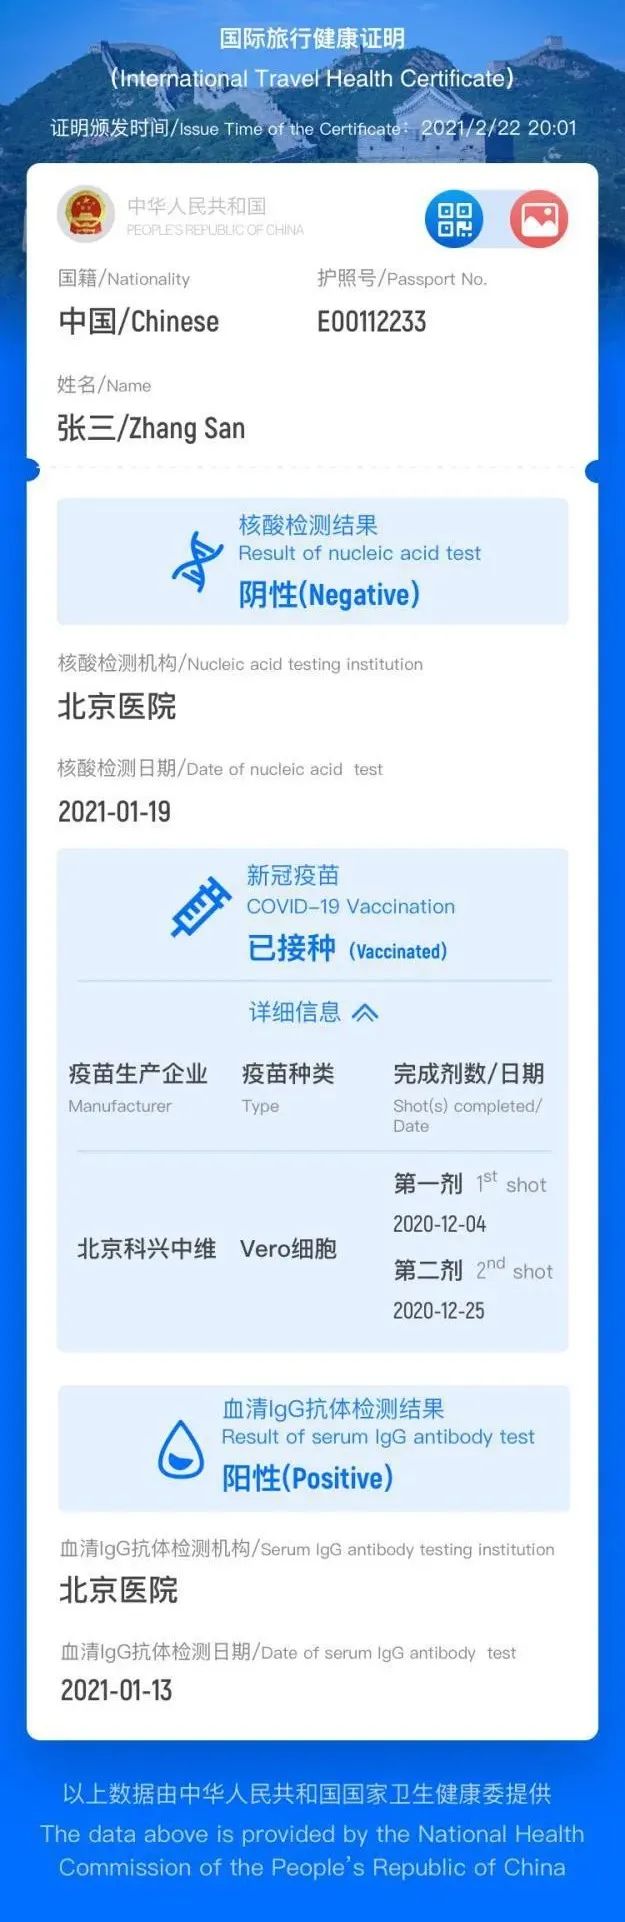 中国版“国际旅行健康证明”电子版样例。注：疫苗接种相关数据正在建设中